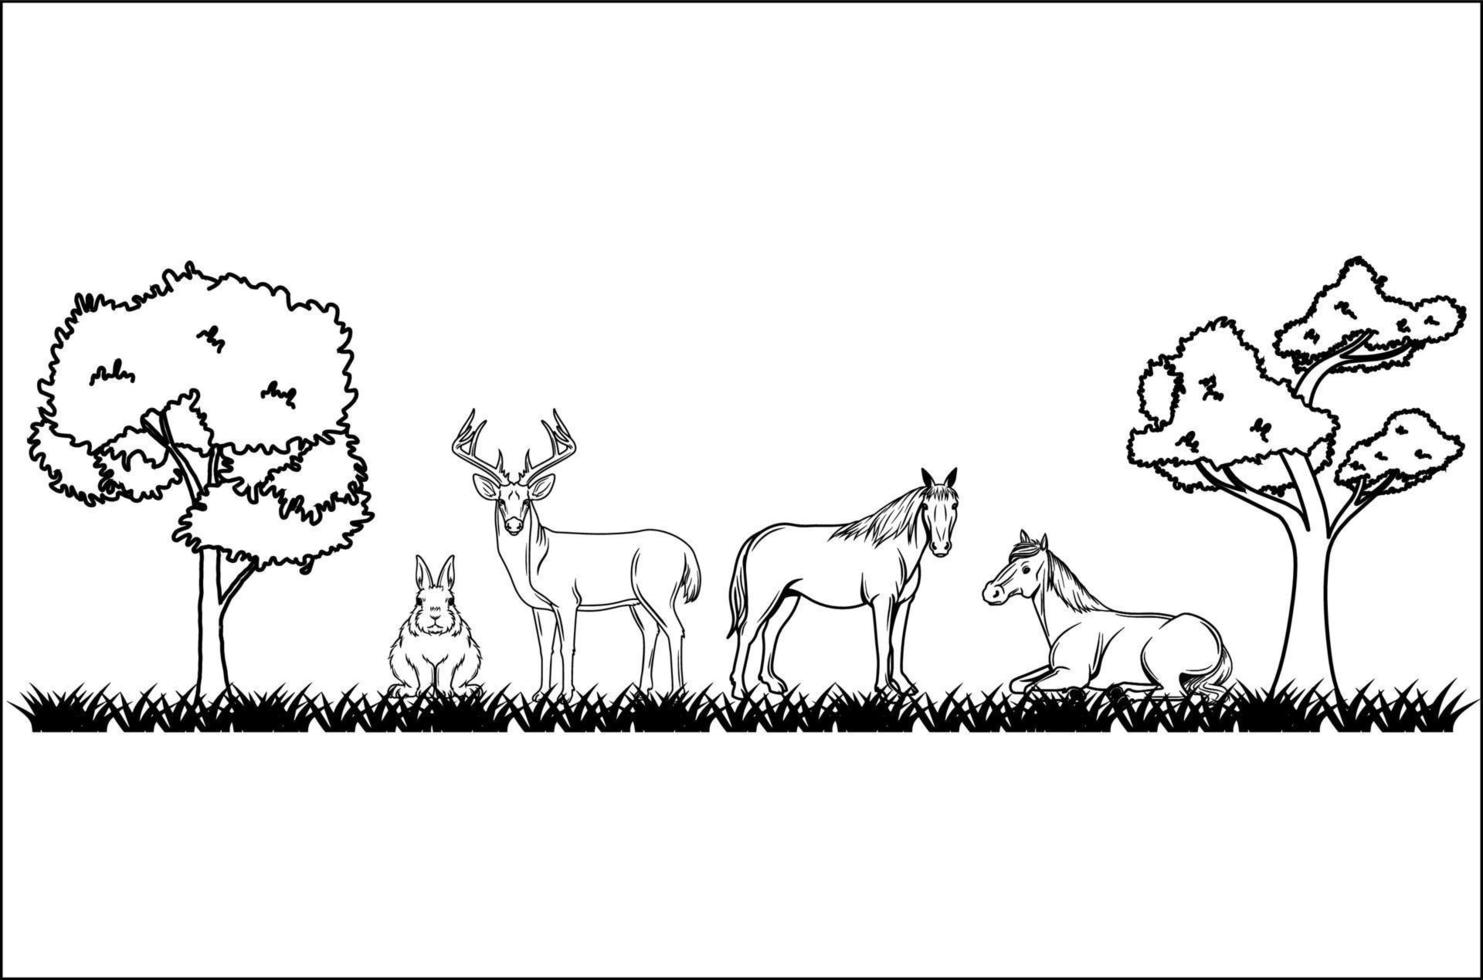 ilustrações de animais na floresta em fundo branco vetor